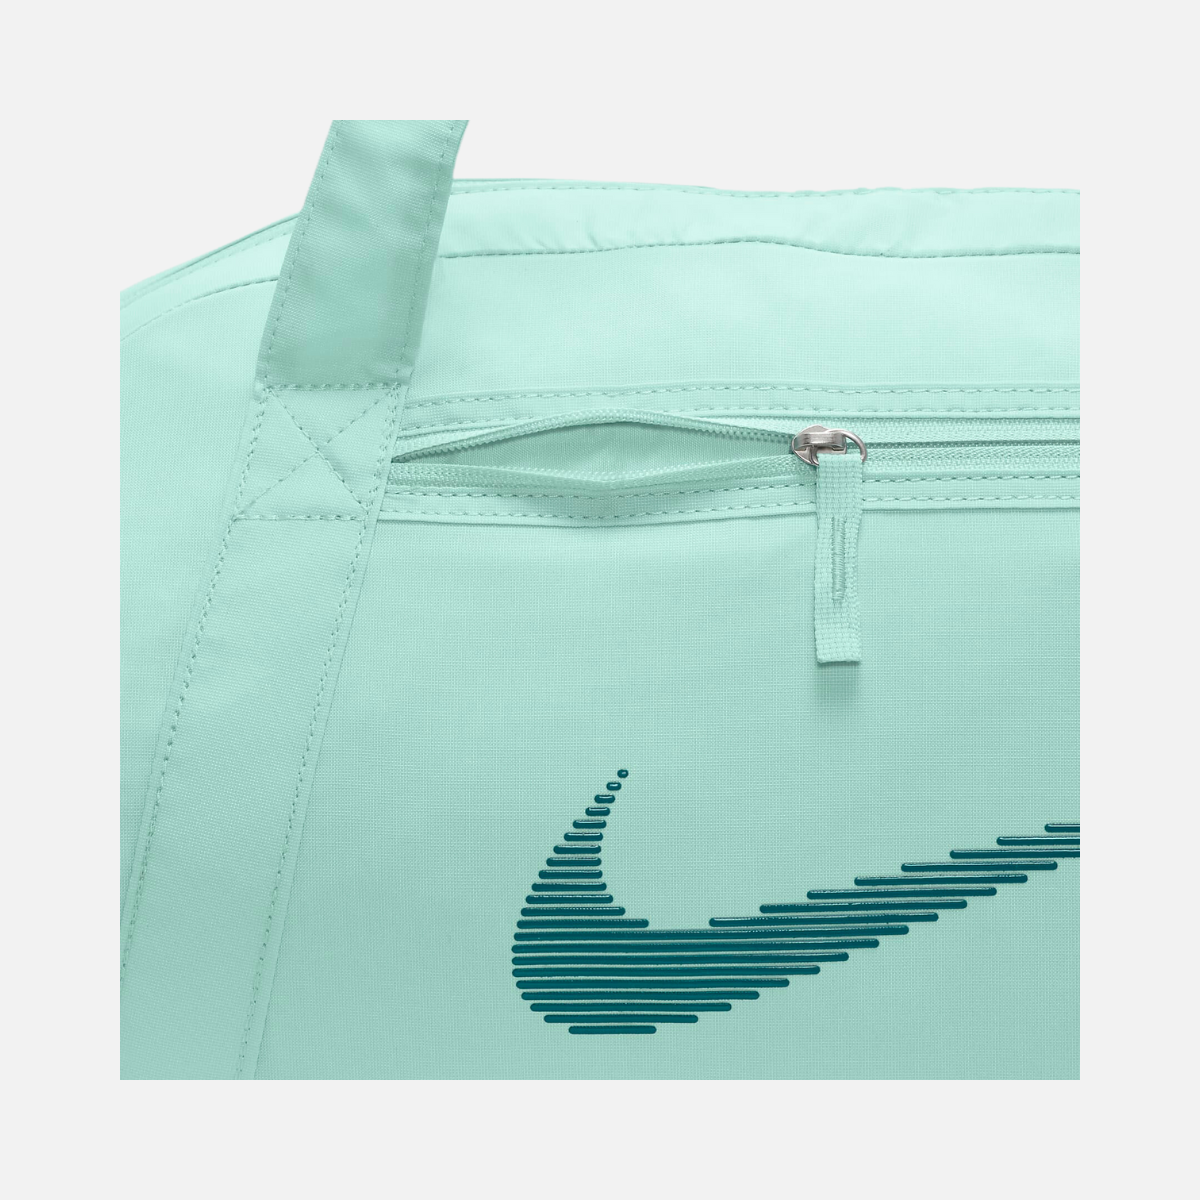 Nike Gym Club Duffel Bag (24L) - Jade Ice/Jade Ice/Geode Teal